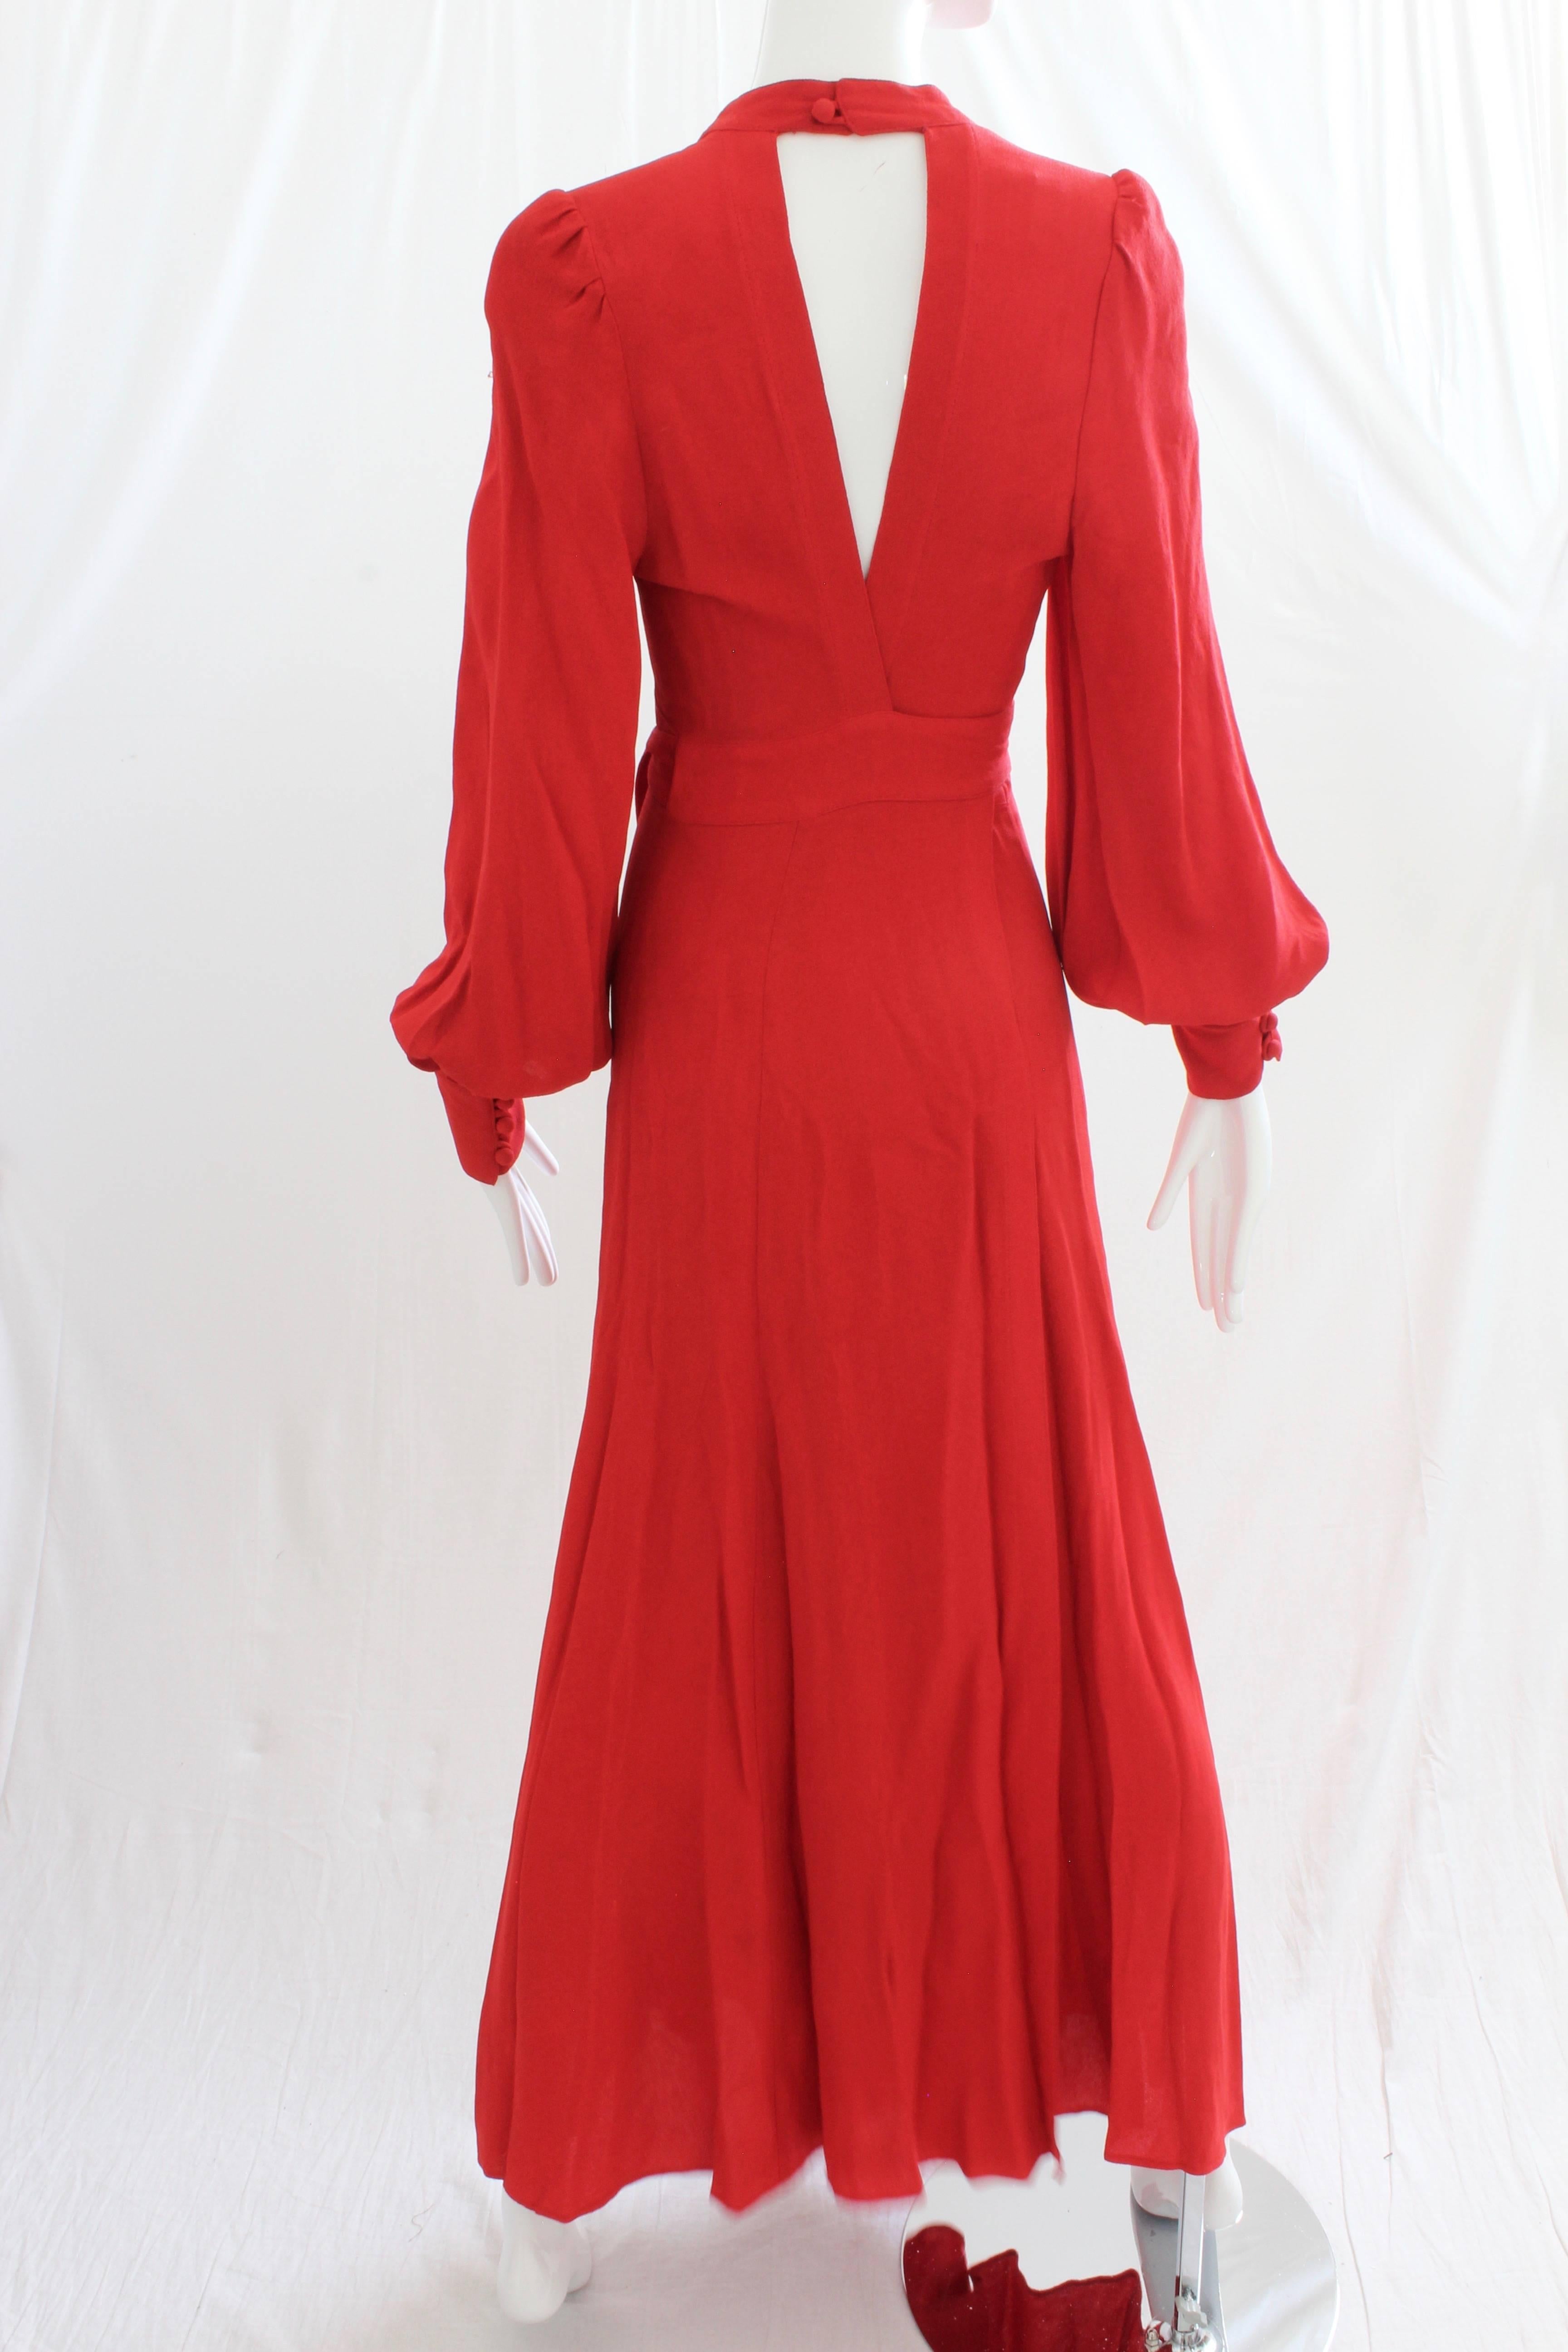 ossie clark vintage dress